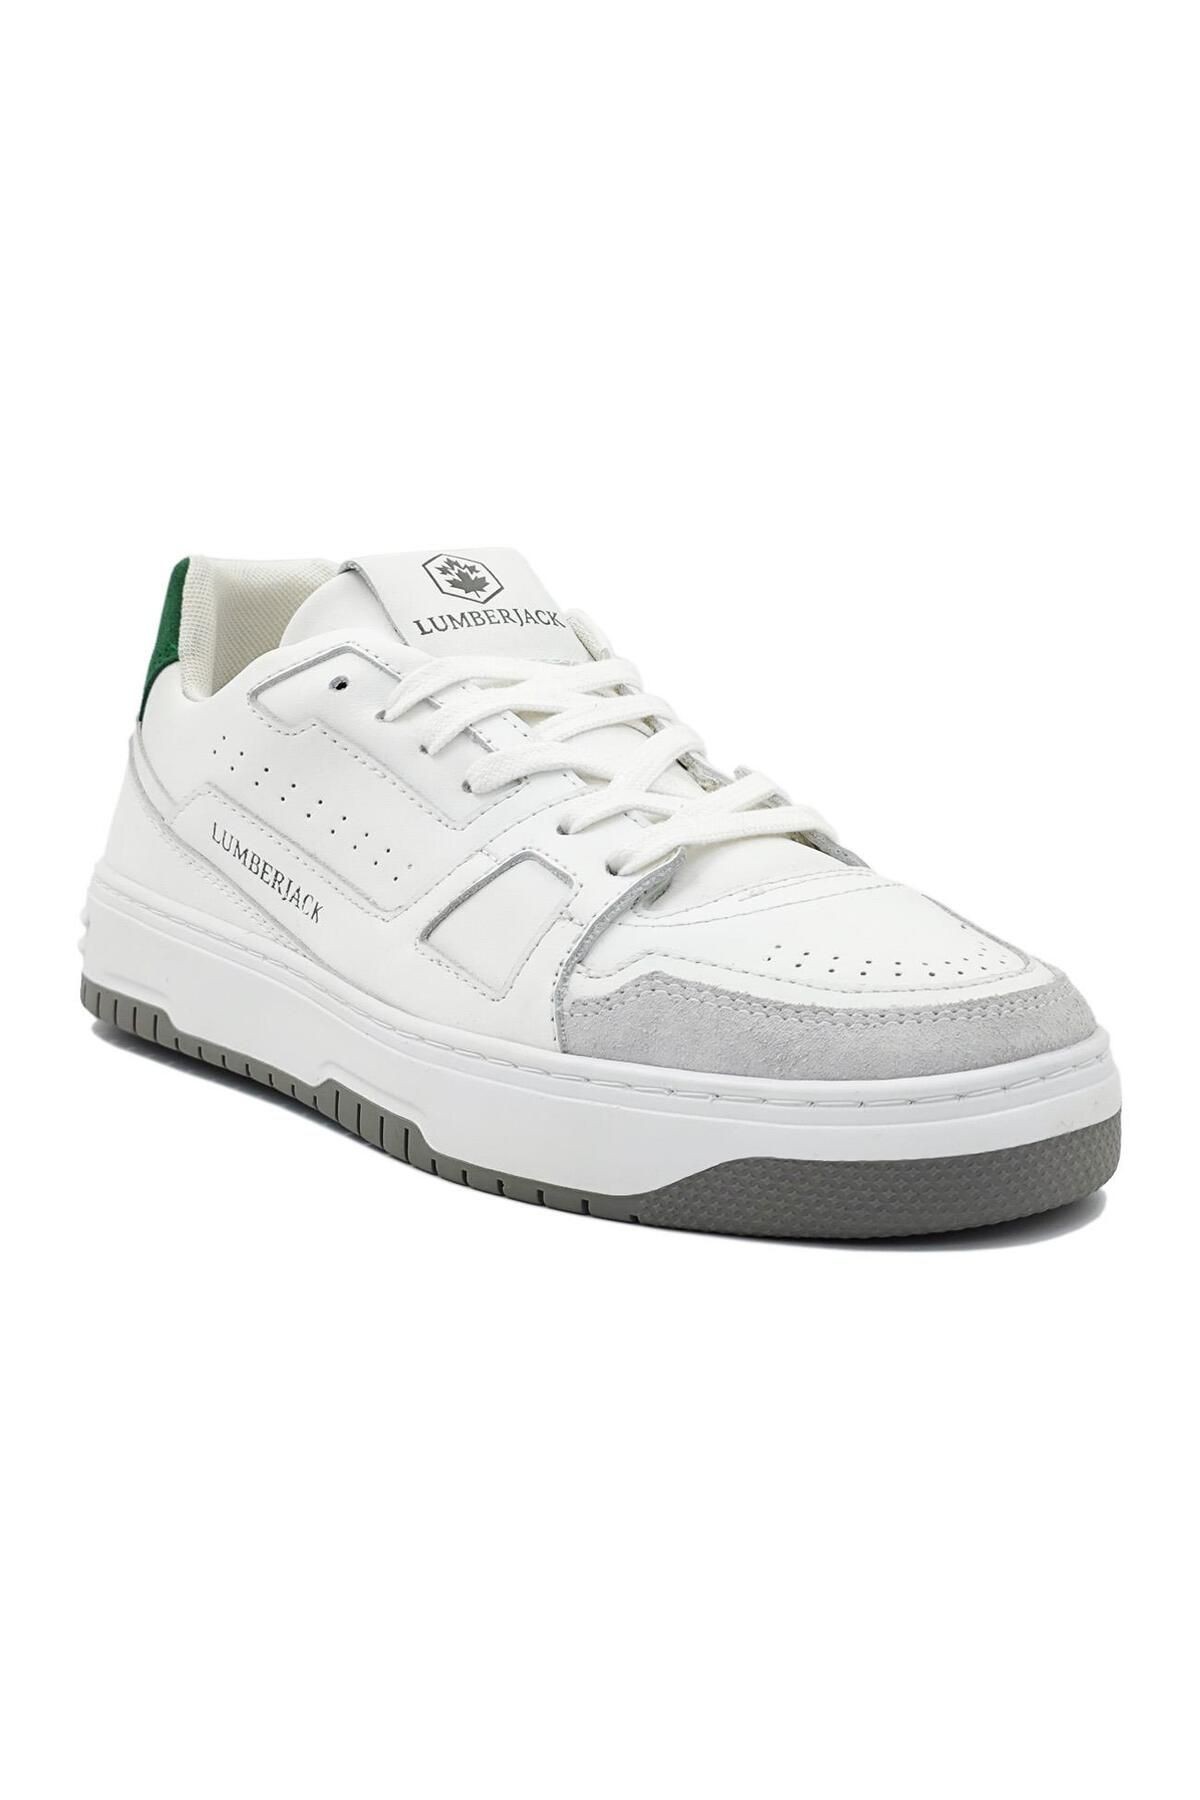 VILLA Erkek Spor Ayakkabı Beyaz-Yeşil